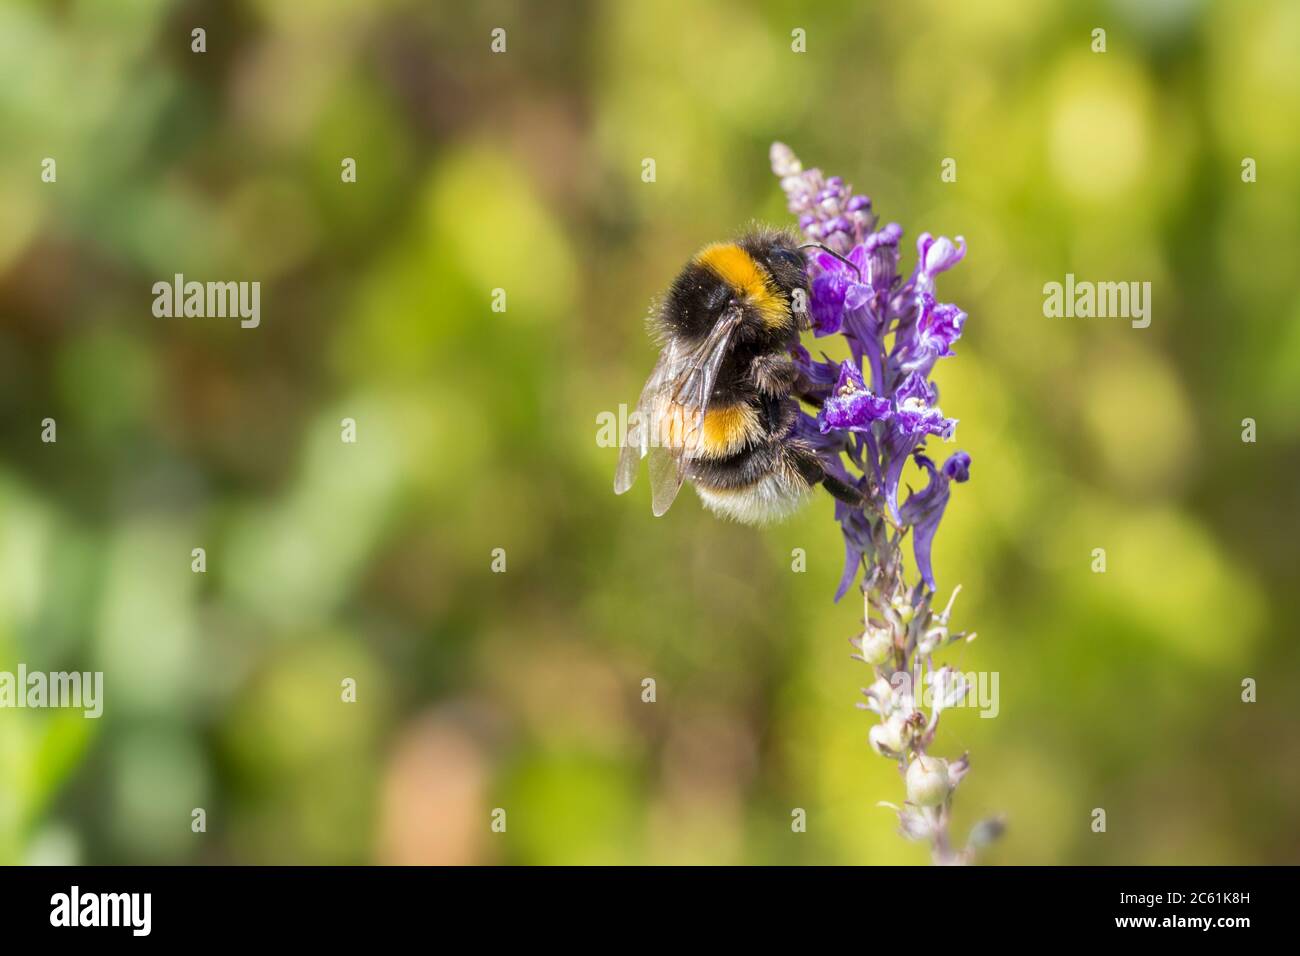 Buff coda bumble ape su fiore viola (Bombus terrestris) punta di diff di addome fascia gialla sull'addome e sulla parte anteriore del torace altrimenti nero. Foto Stock